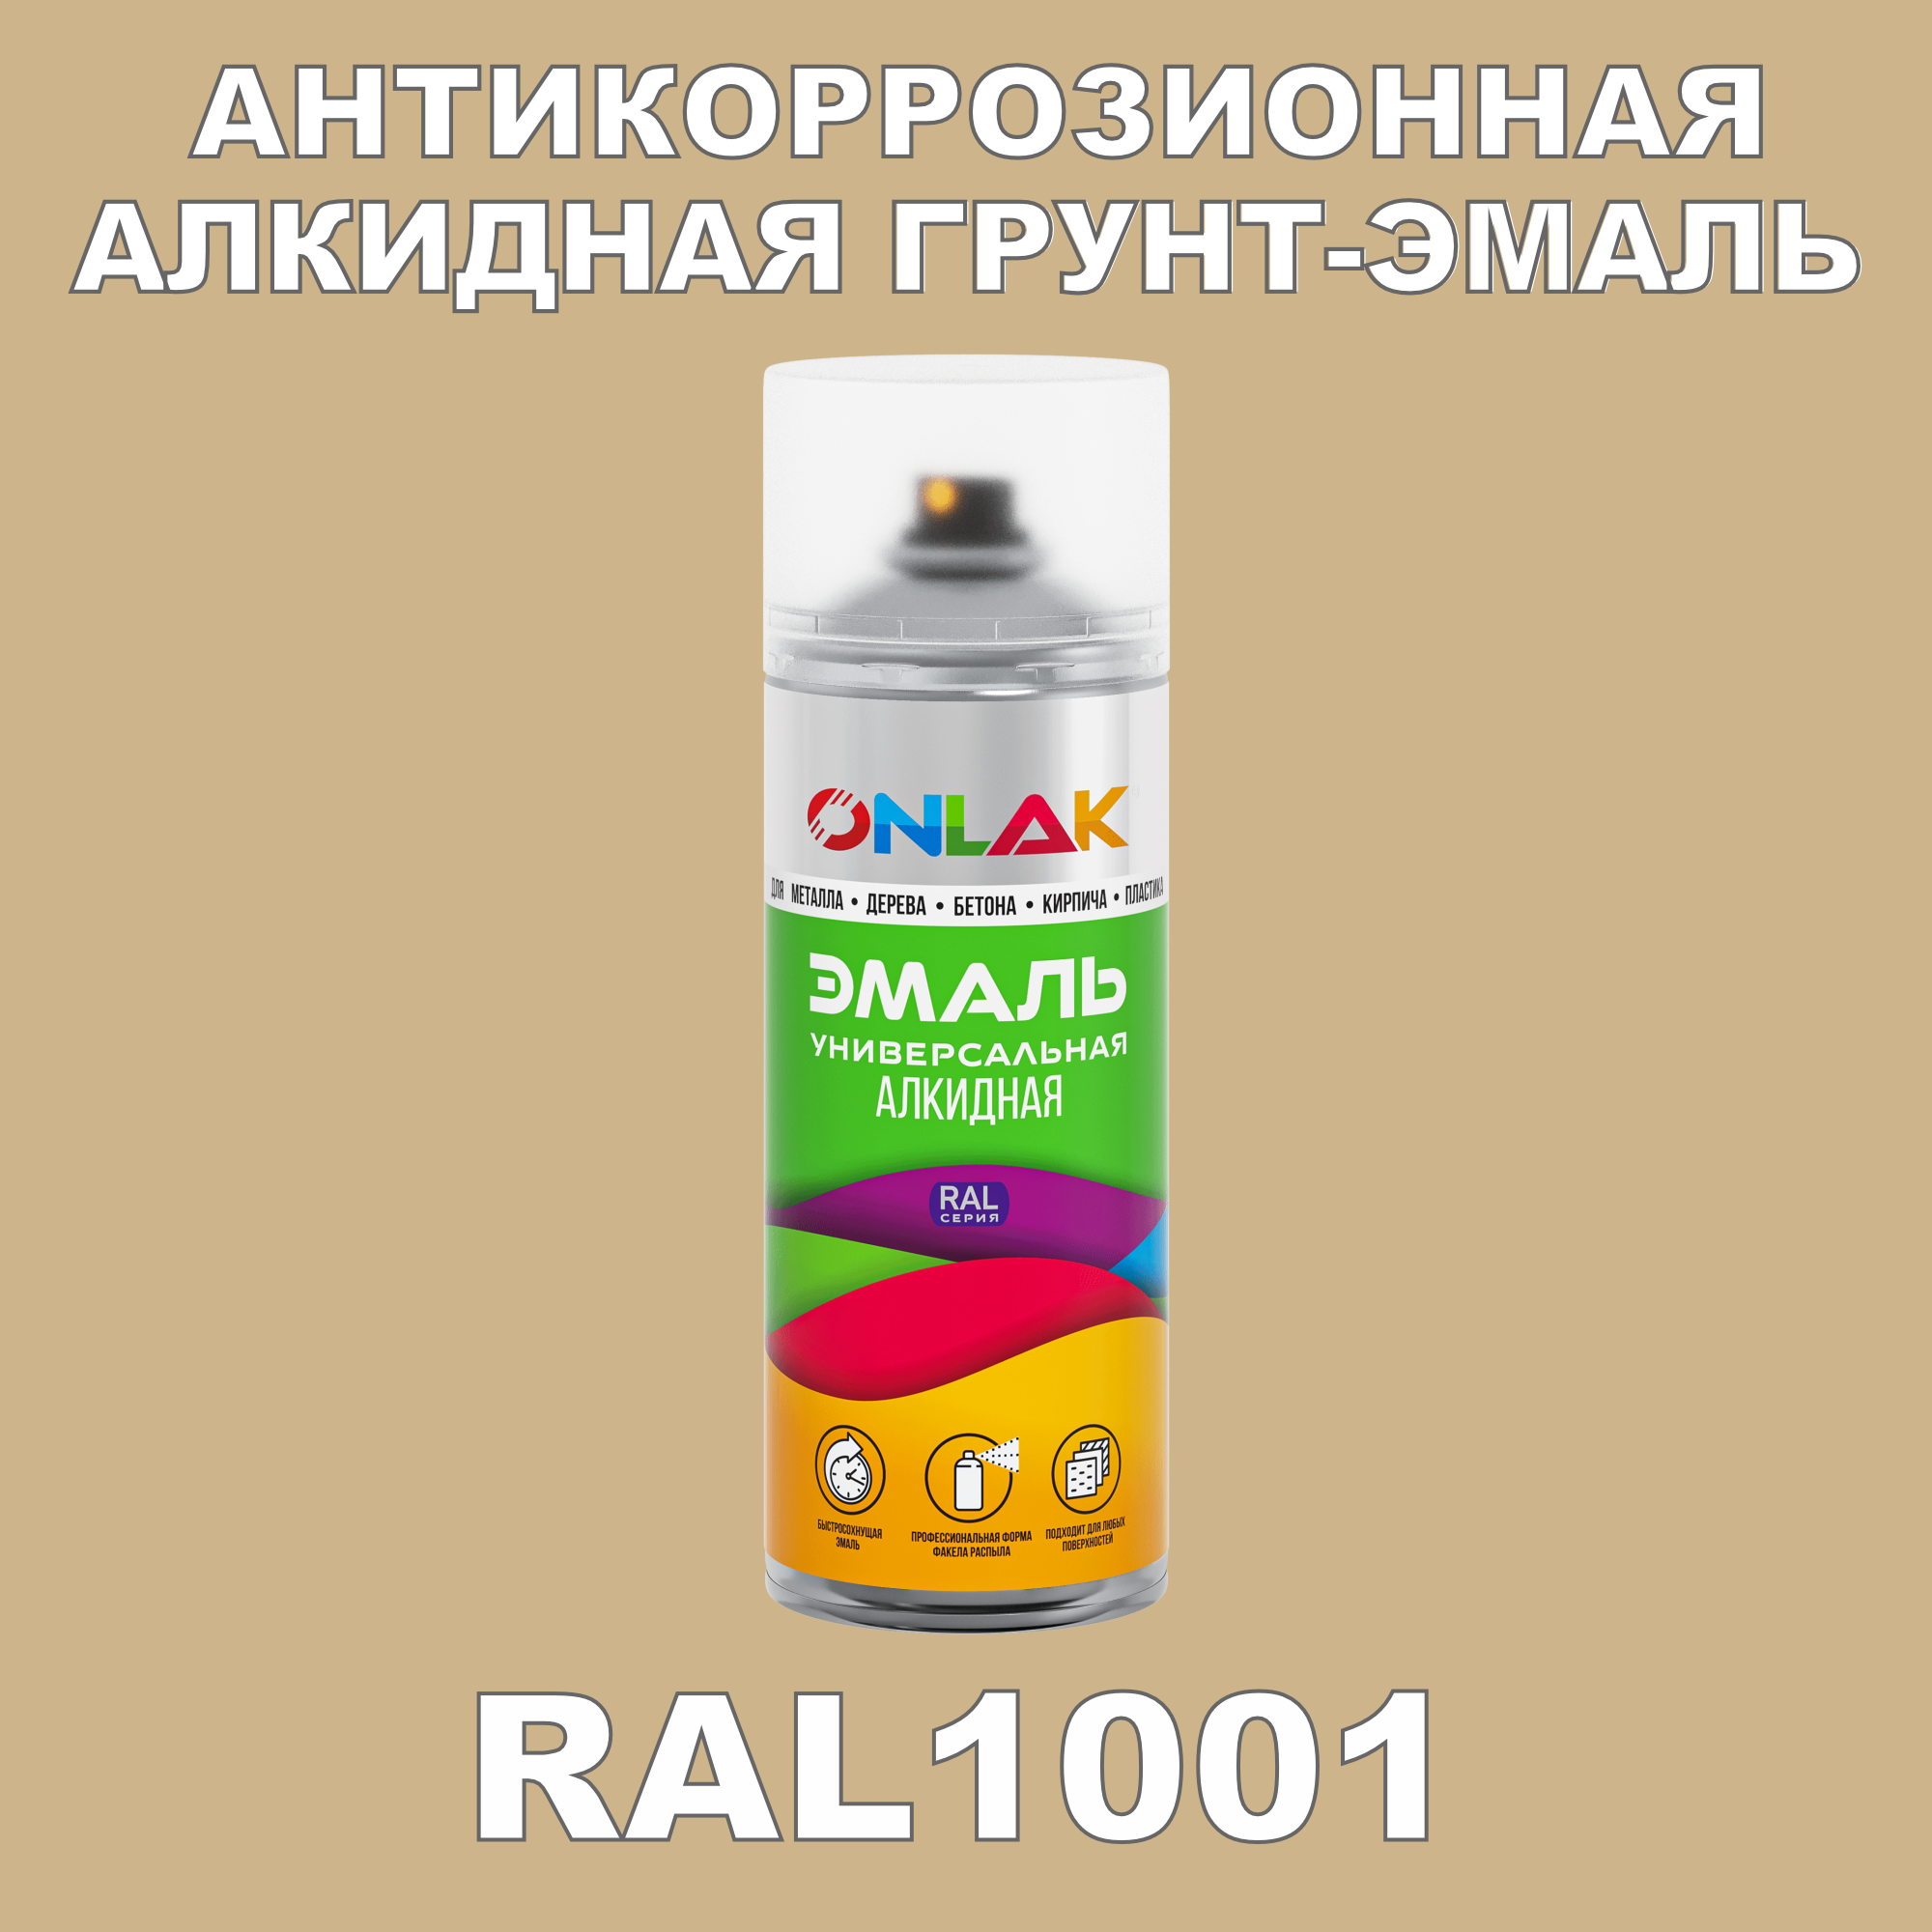 Антикоррозионная грунт-эмаль ONLAK RAL1001 полуматовая для металла и защиты от ржавчины